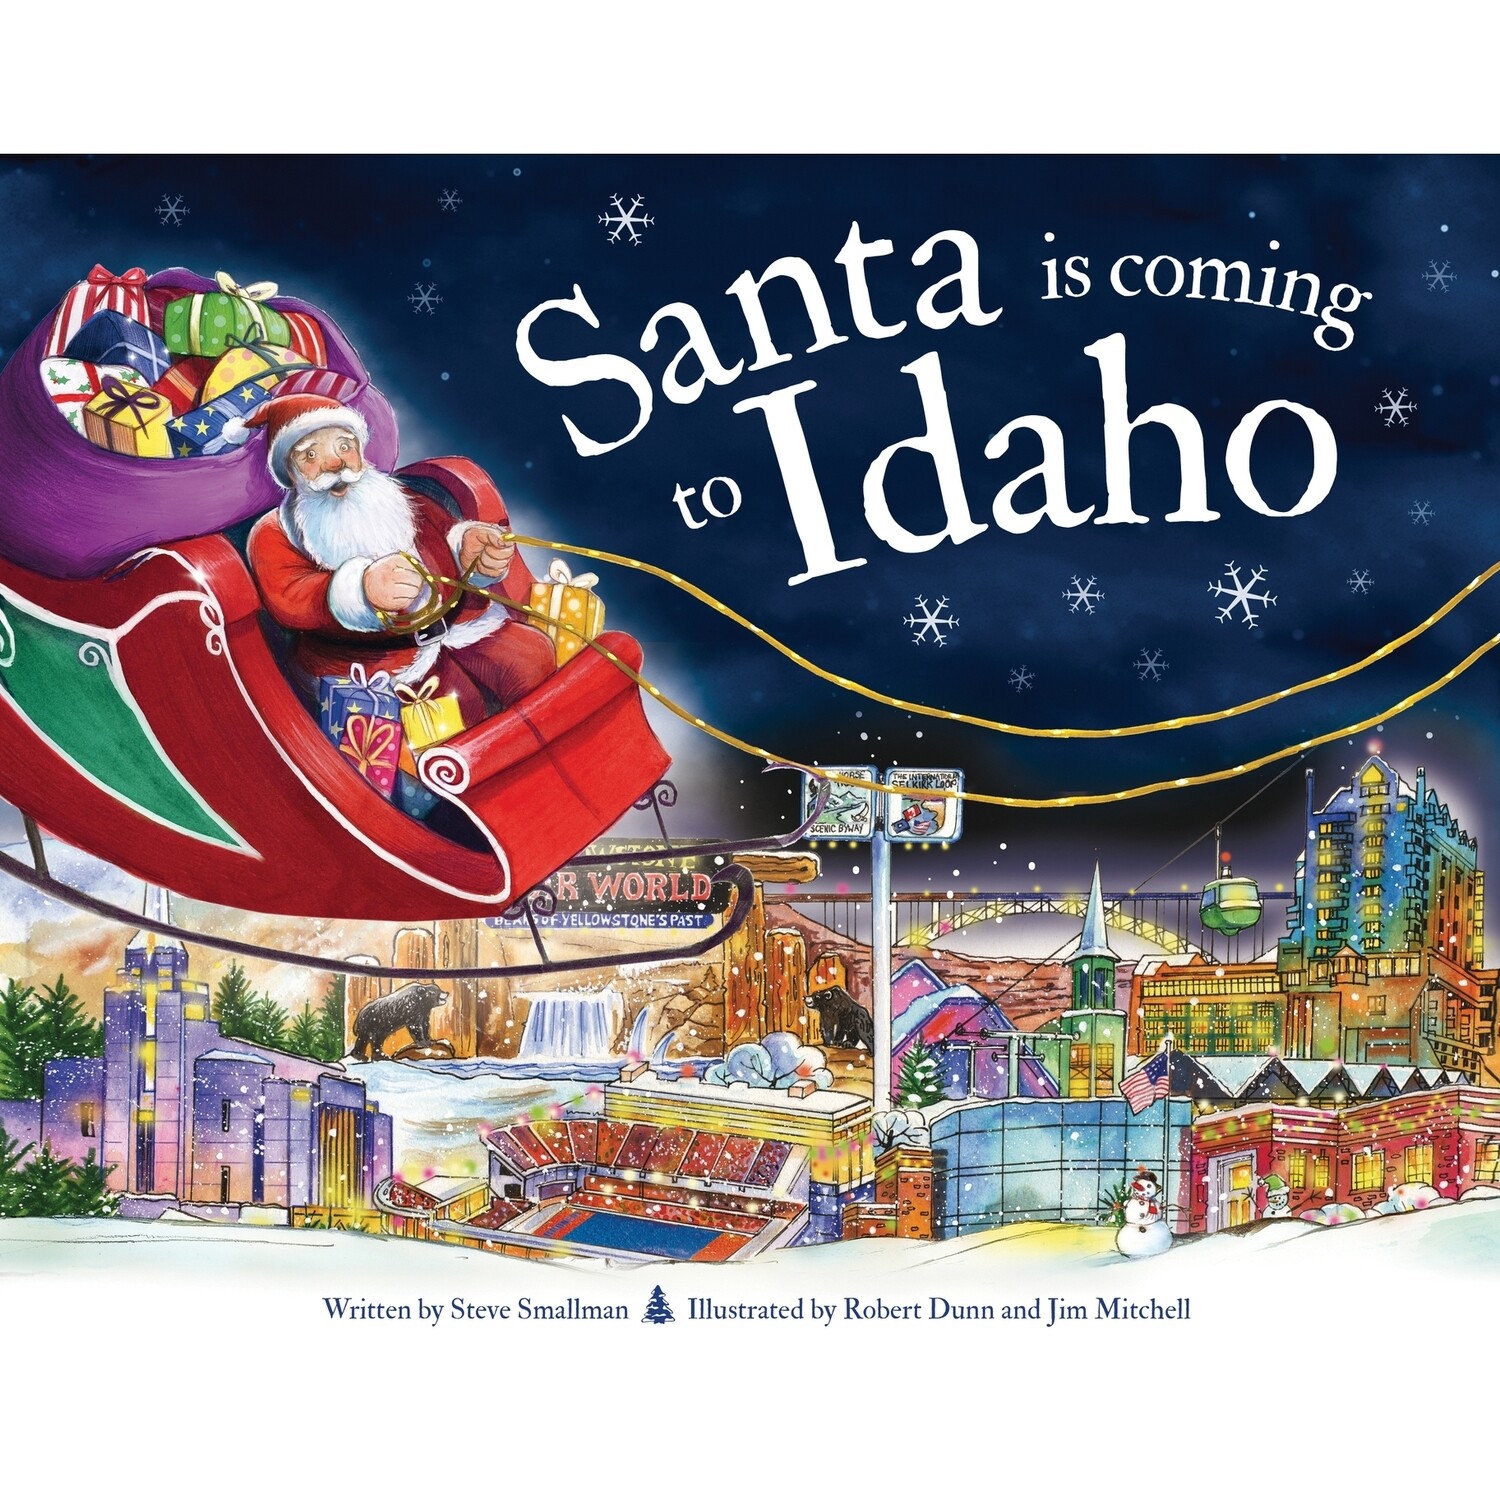 Santa is coming to Idaho